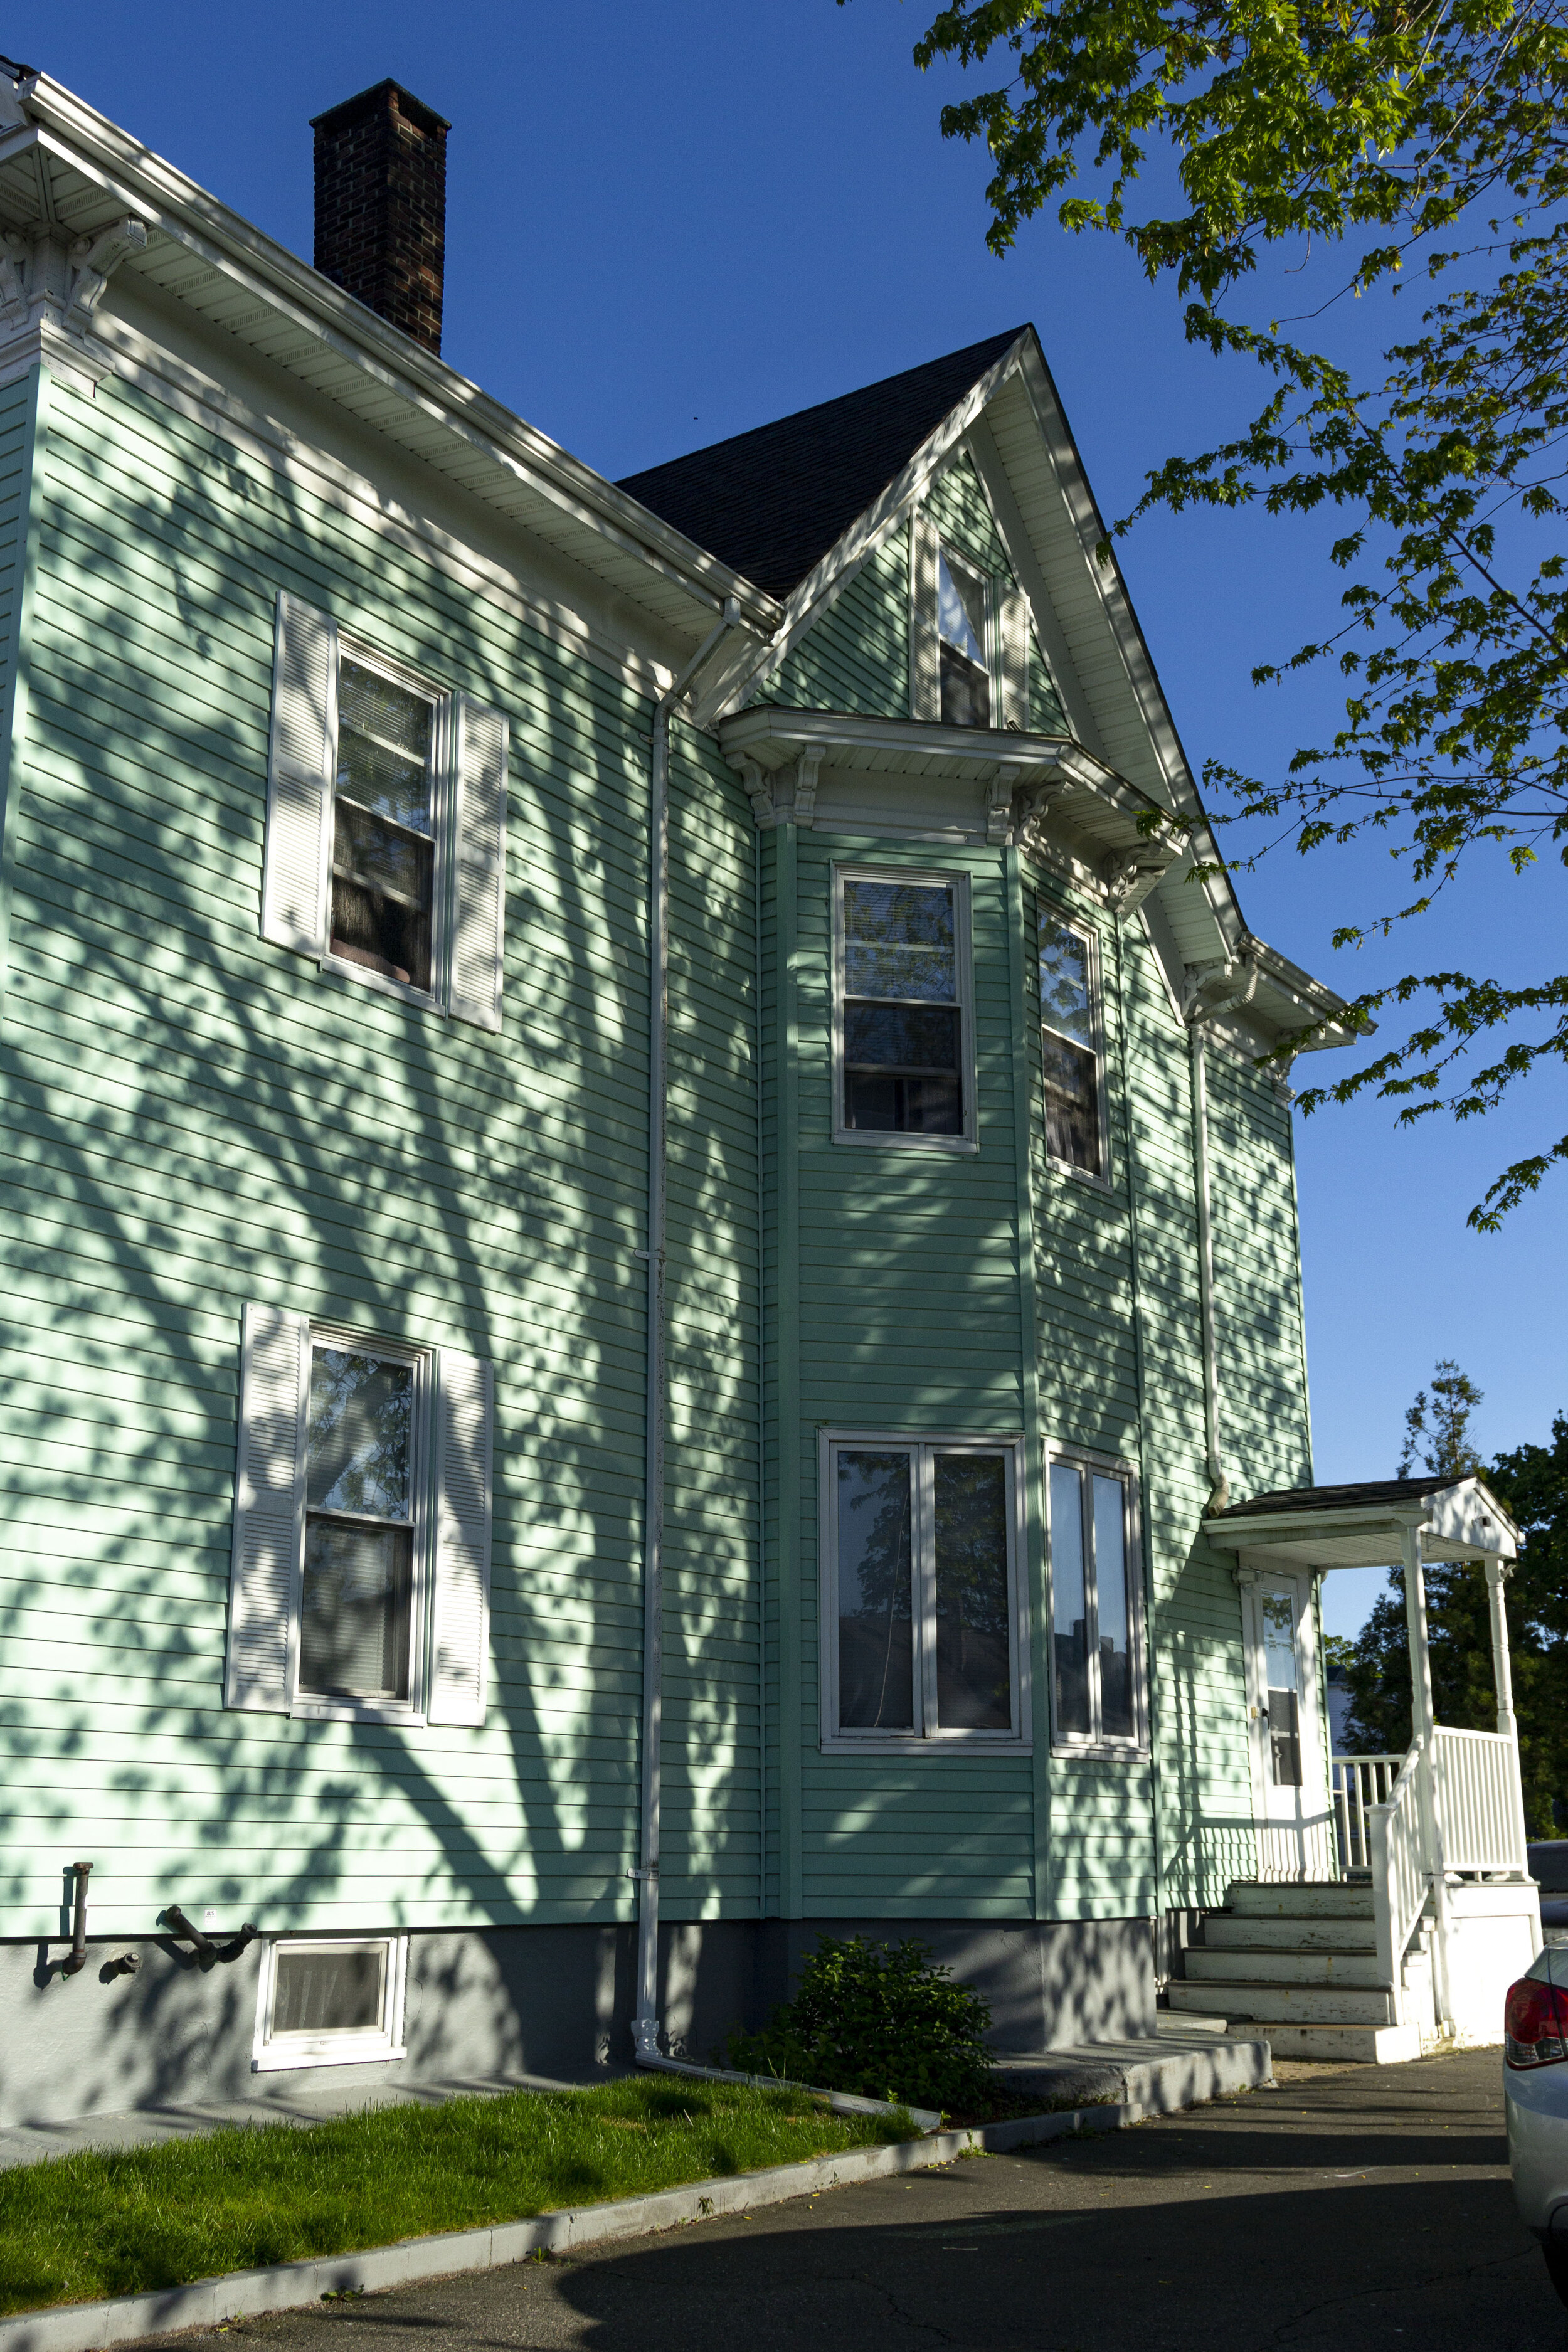   I Like Every House This Color, Raynham, MA,  2020 